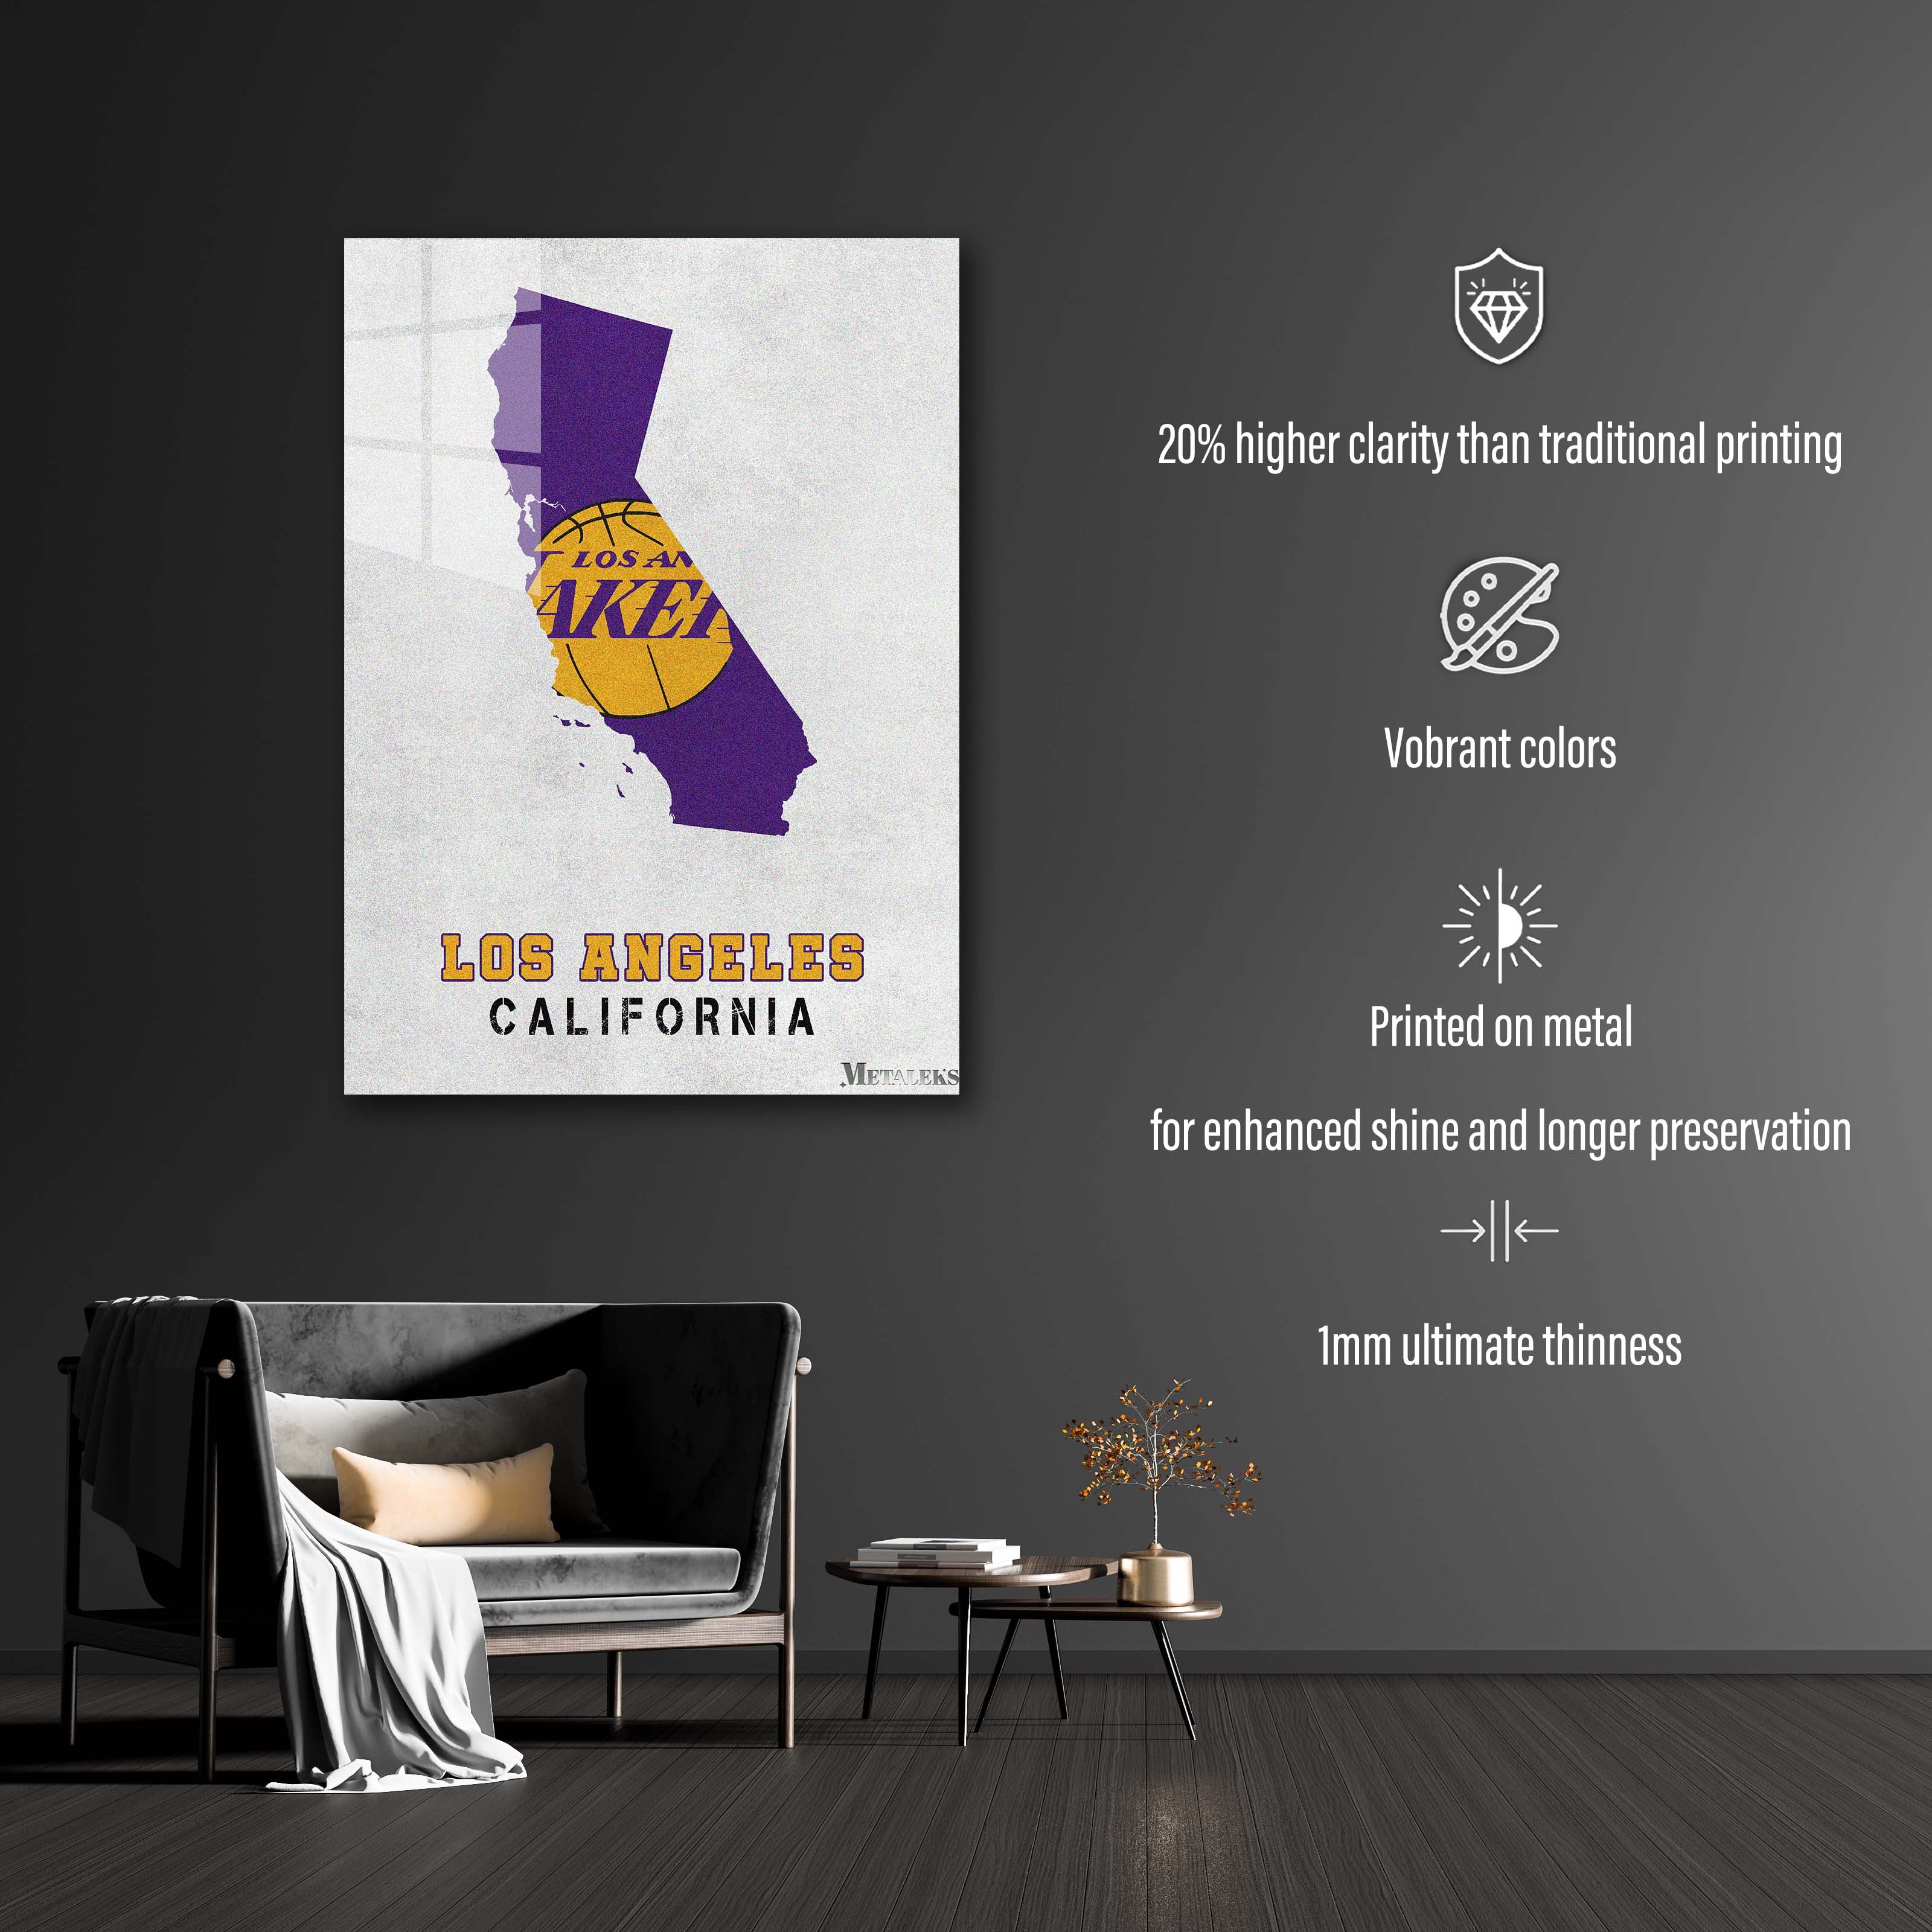 Los Angeles Lakers-designed by @Hoang Van Thuan